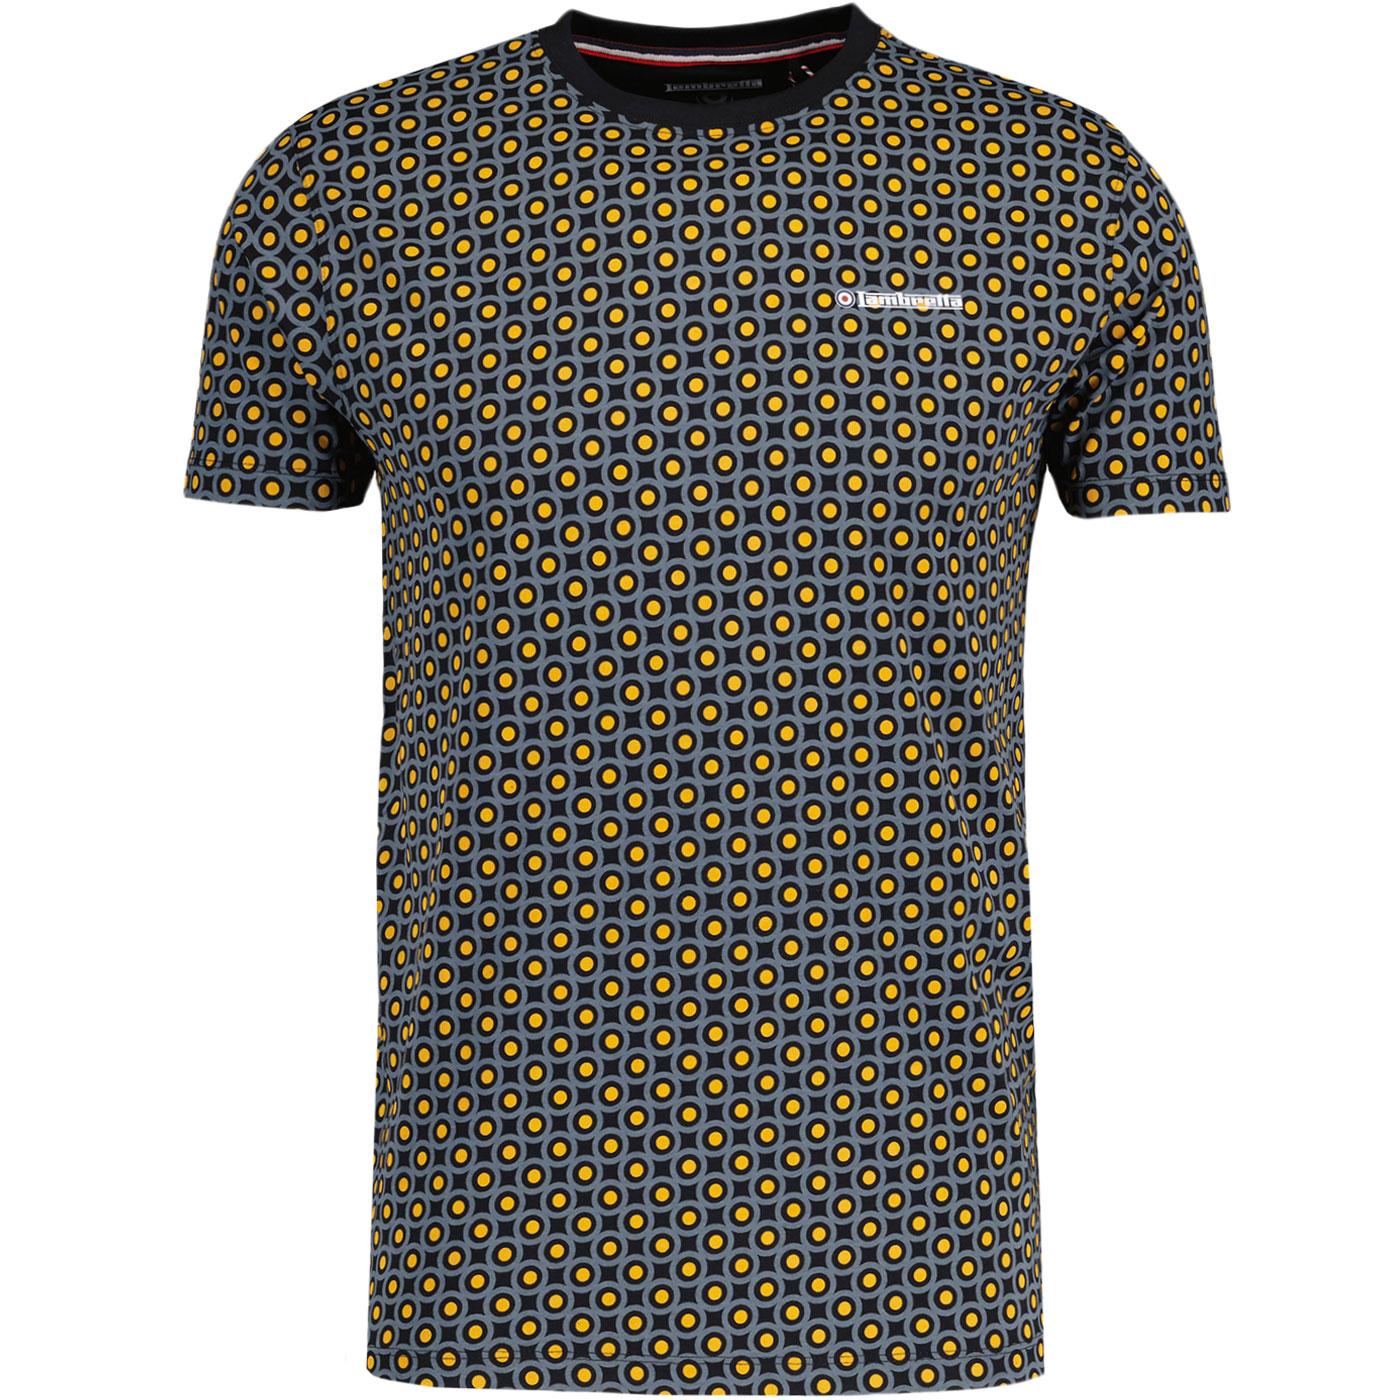 Lambretta Retro Mod Geo Target T-shirt (Black)